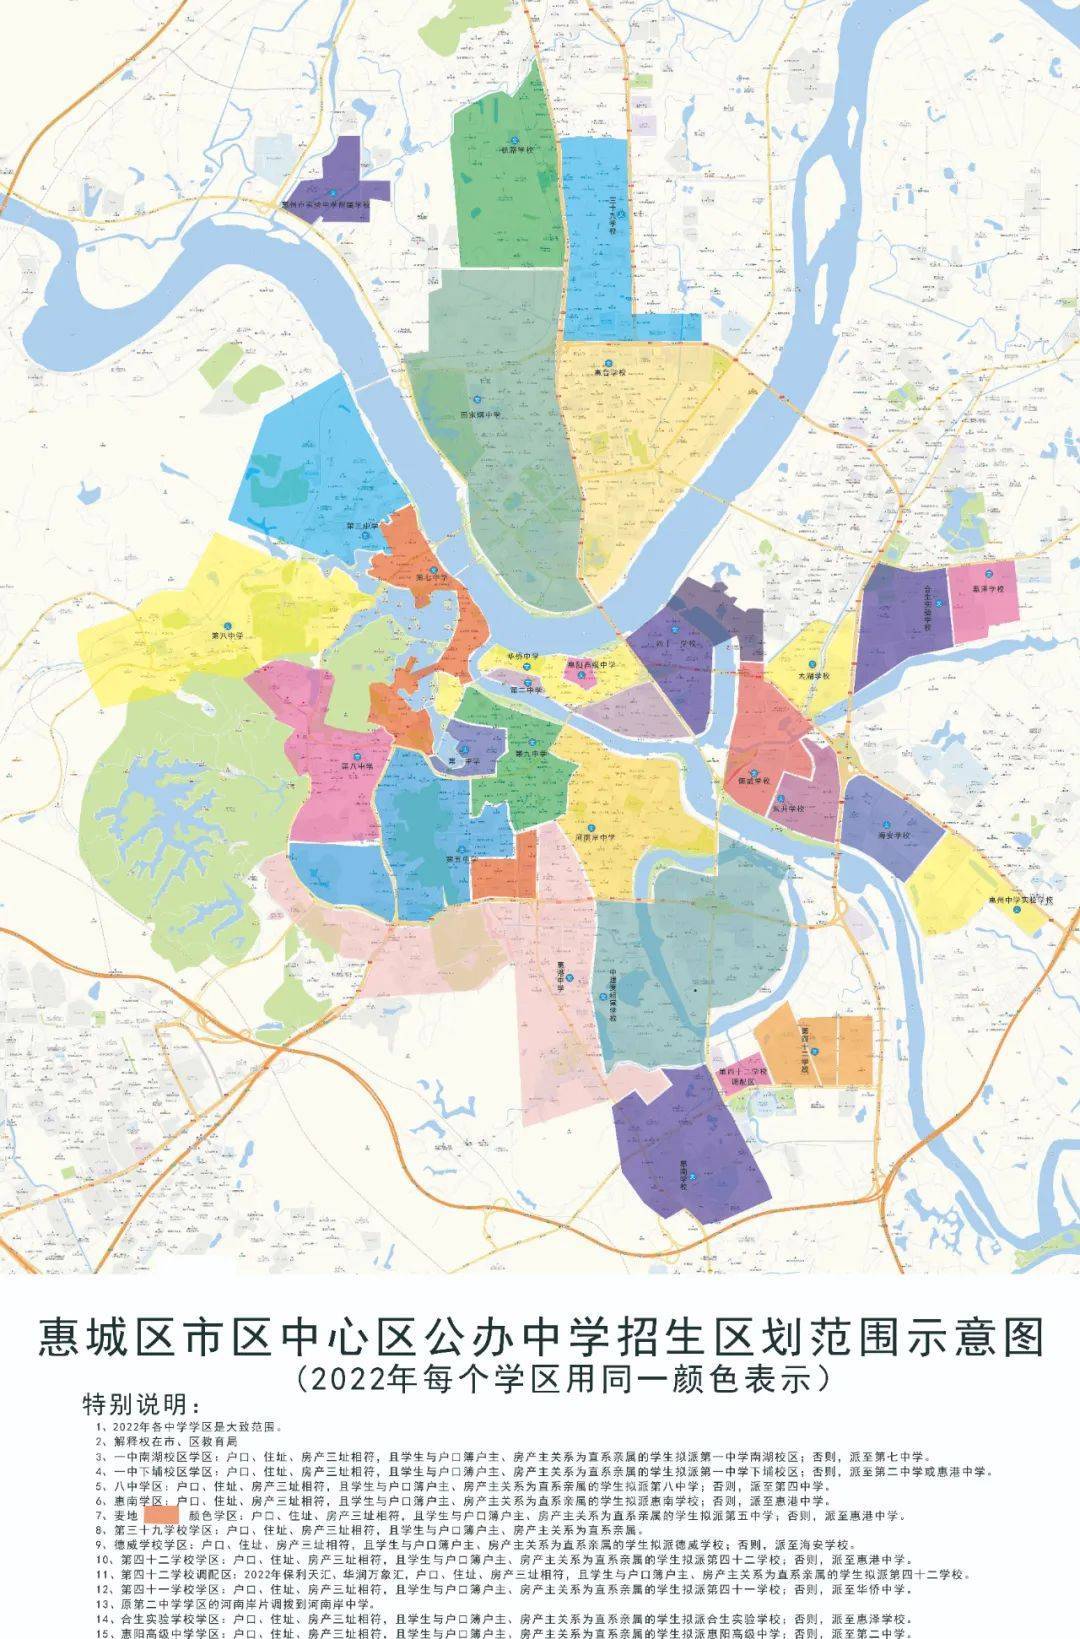 惠城区各镇分布图图片